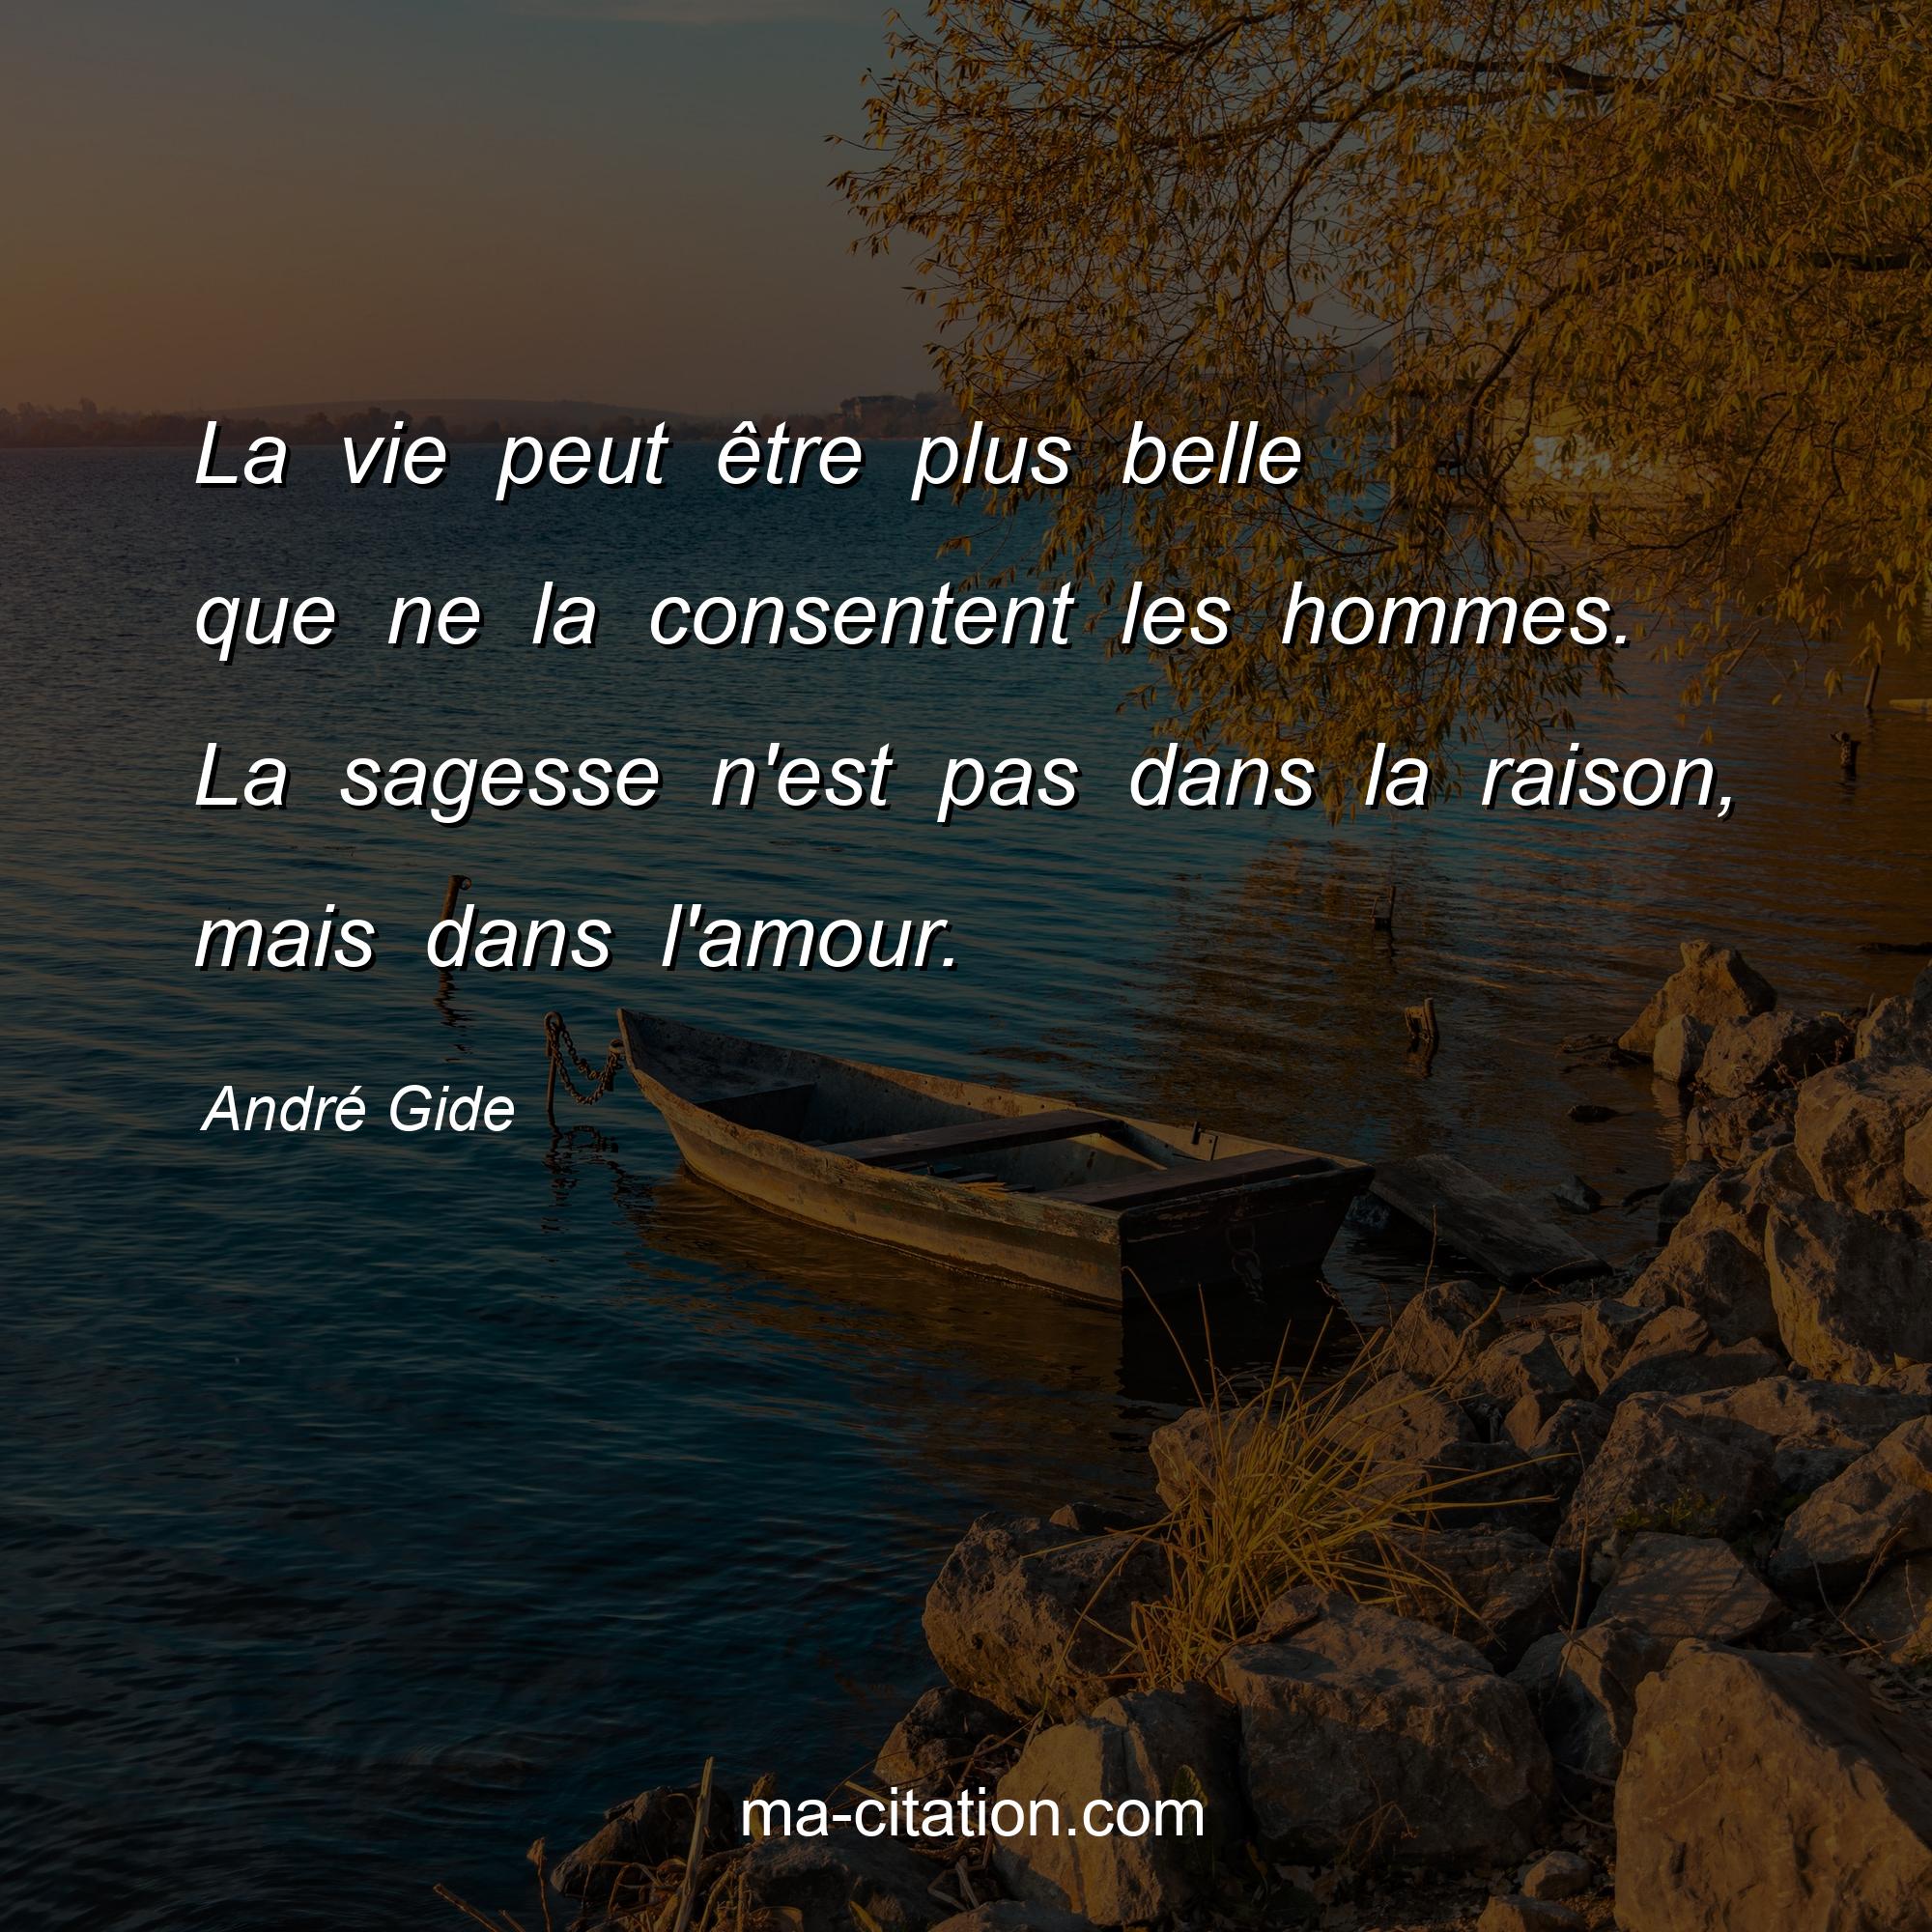 André Gide : La vie peut être plus belle que ne la consentent les hommes. La sagesse n'est pas dans la raison, mais dans l'amour.